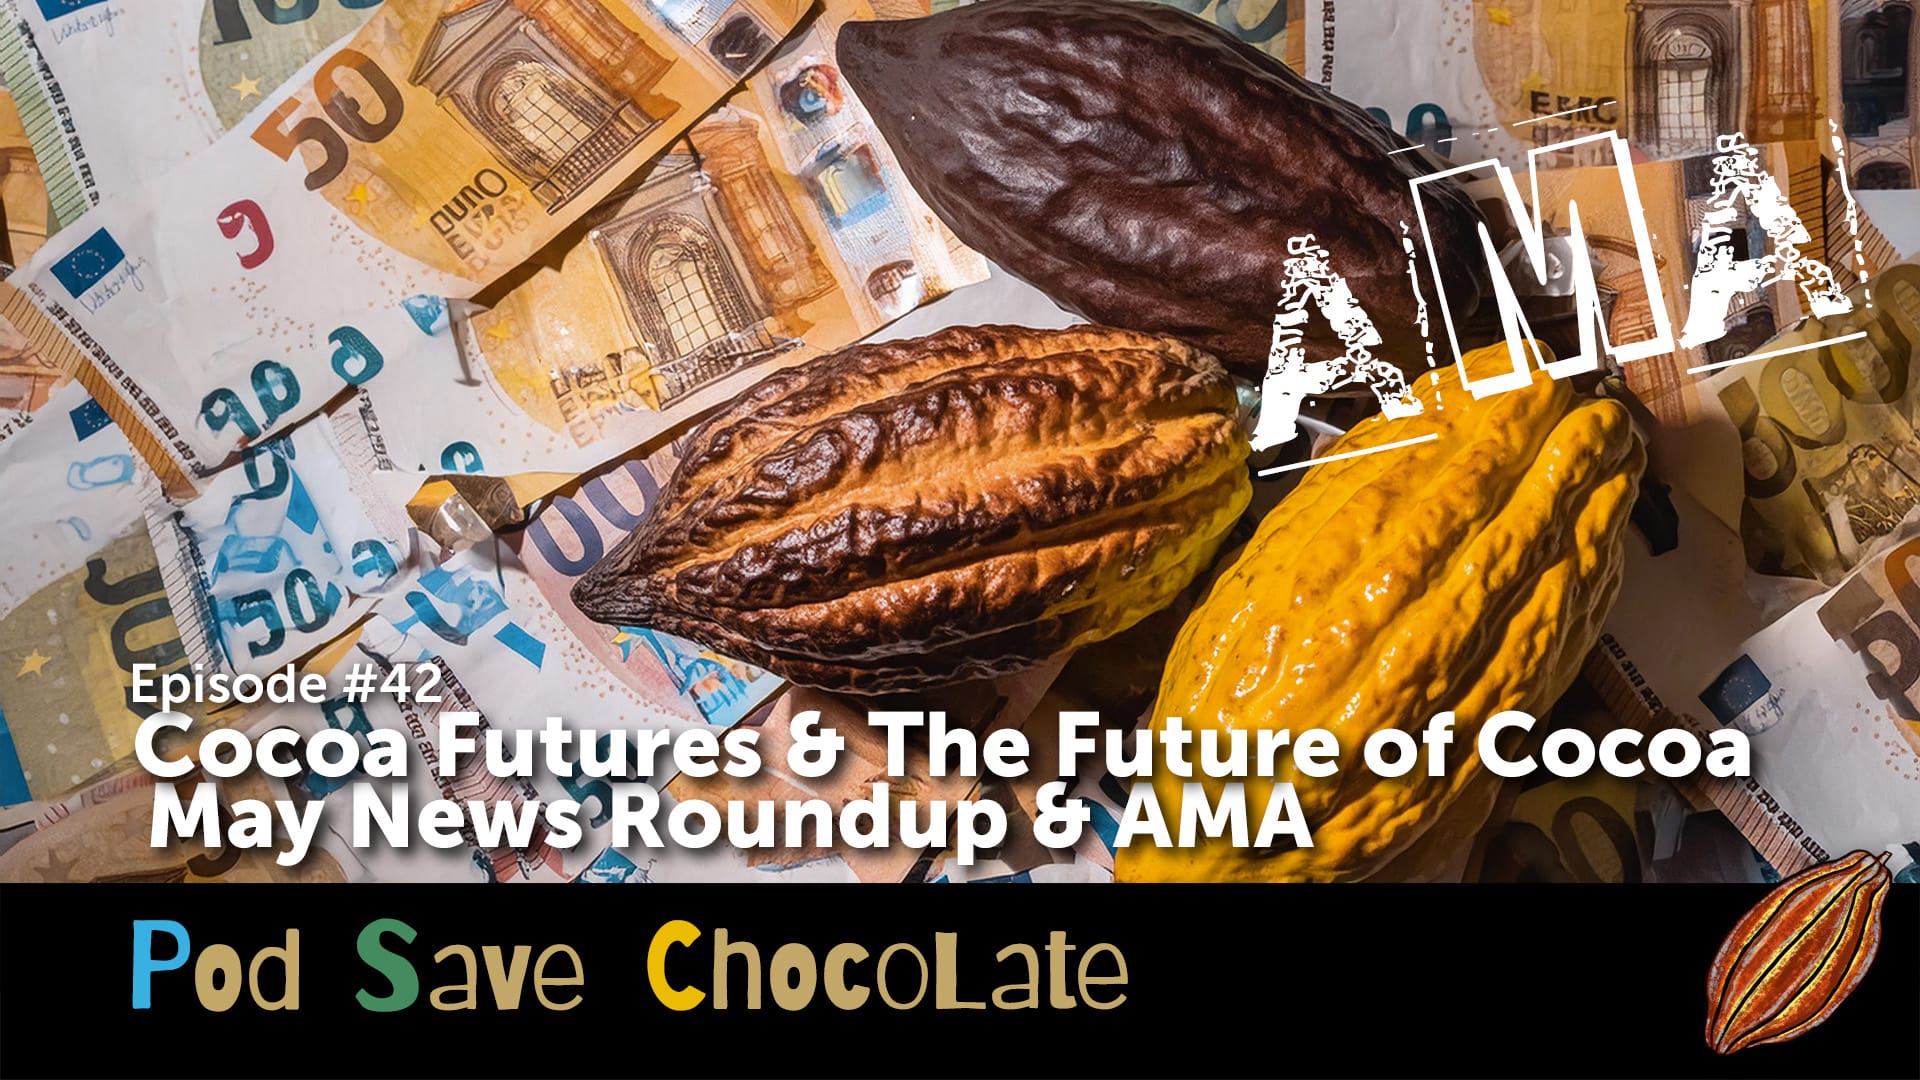 May News Roundup & AMA | #PodSaveChocolate